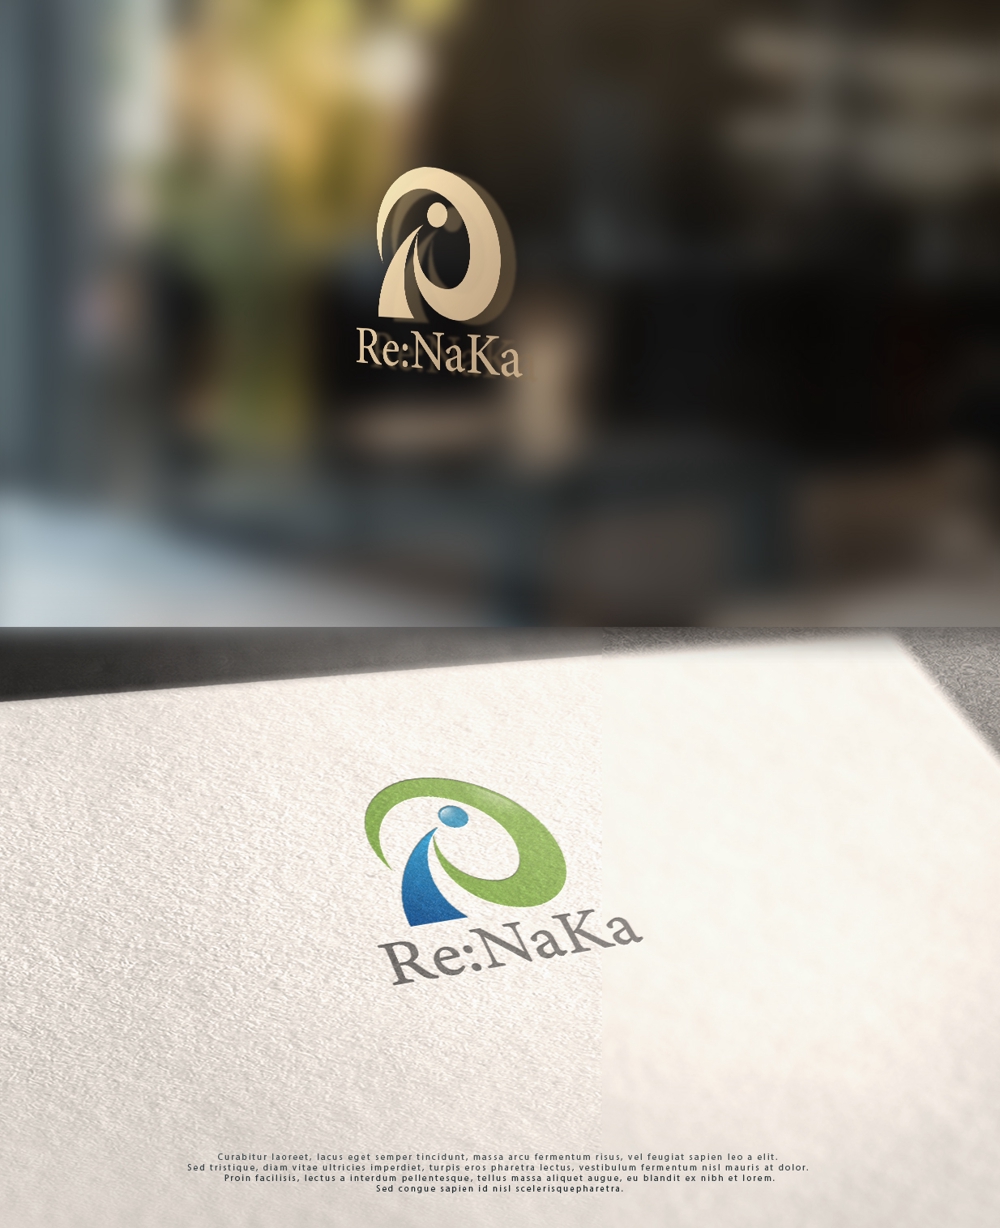 リフォーム会社『Re:Naka』の名刺やHPのロゴをお願いします。